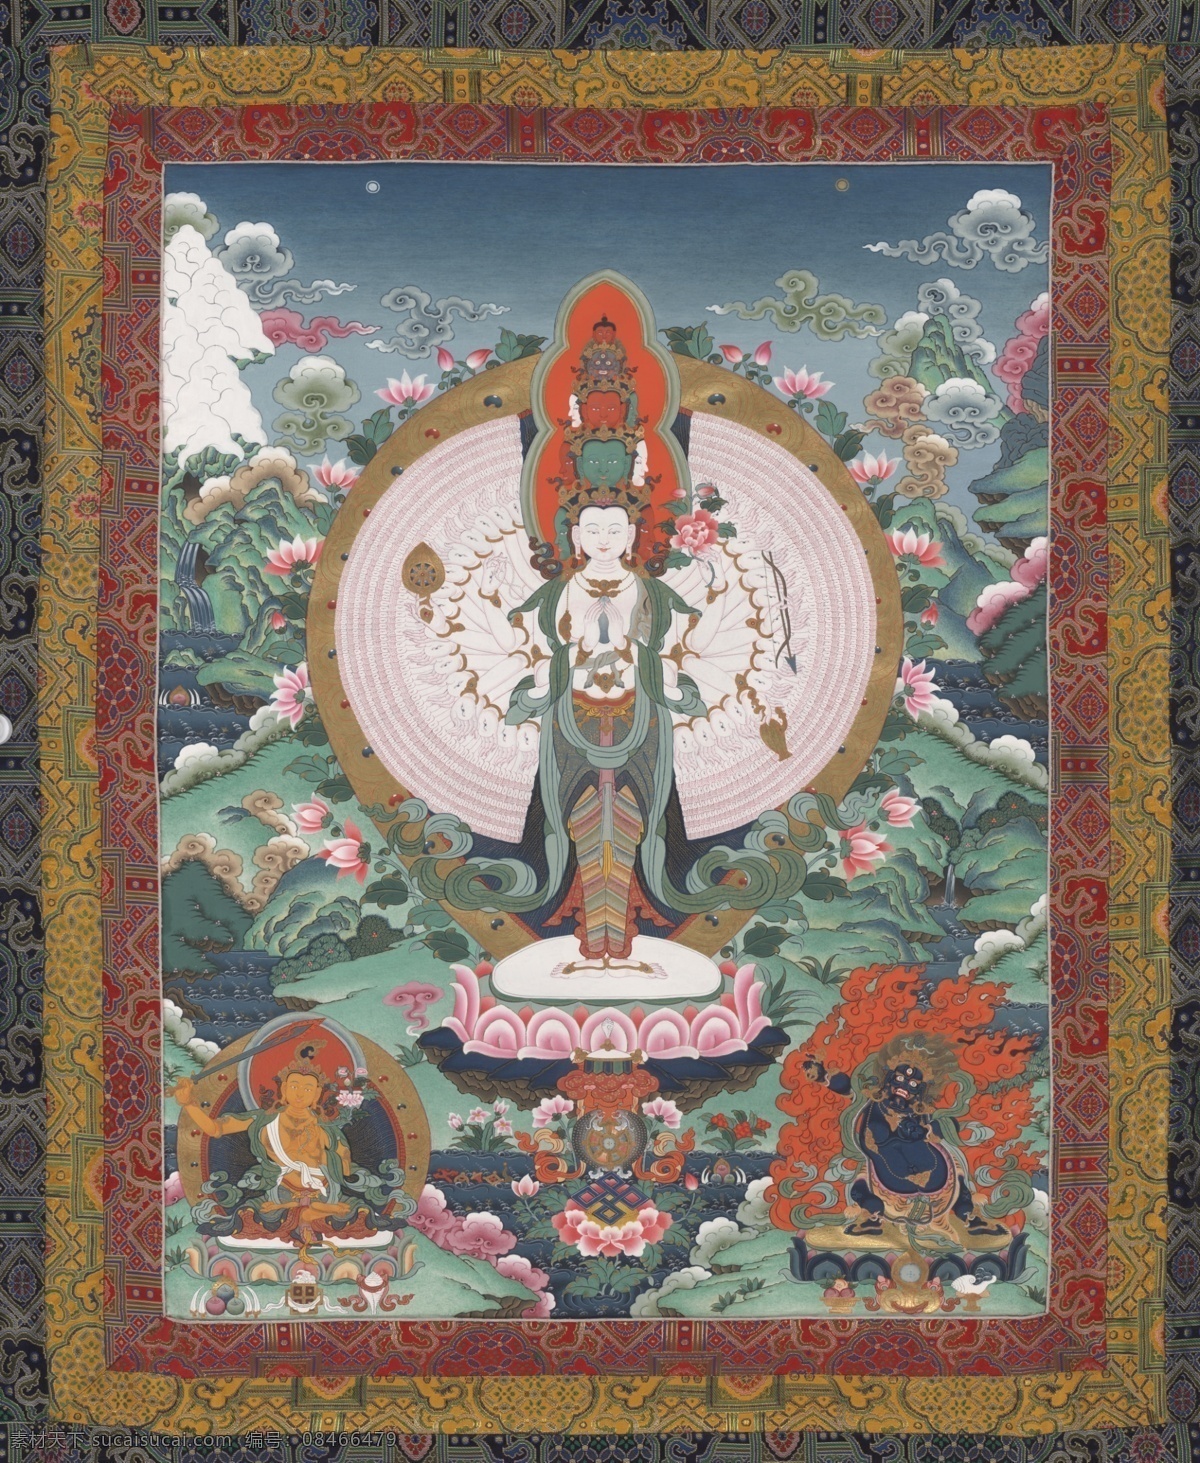 唐卡系列 藏传佛教 唐卡 佛教 宗教 文化 手绘 图腾 文化艺术 宗教信仰